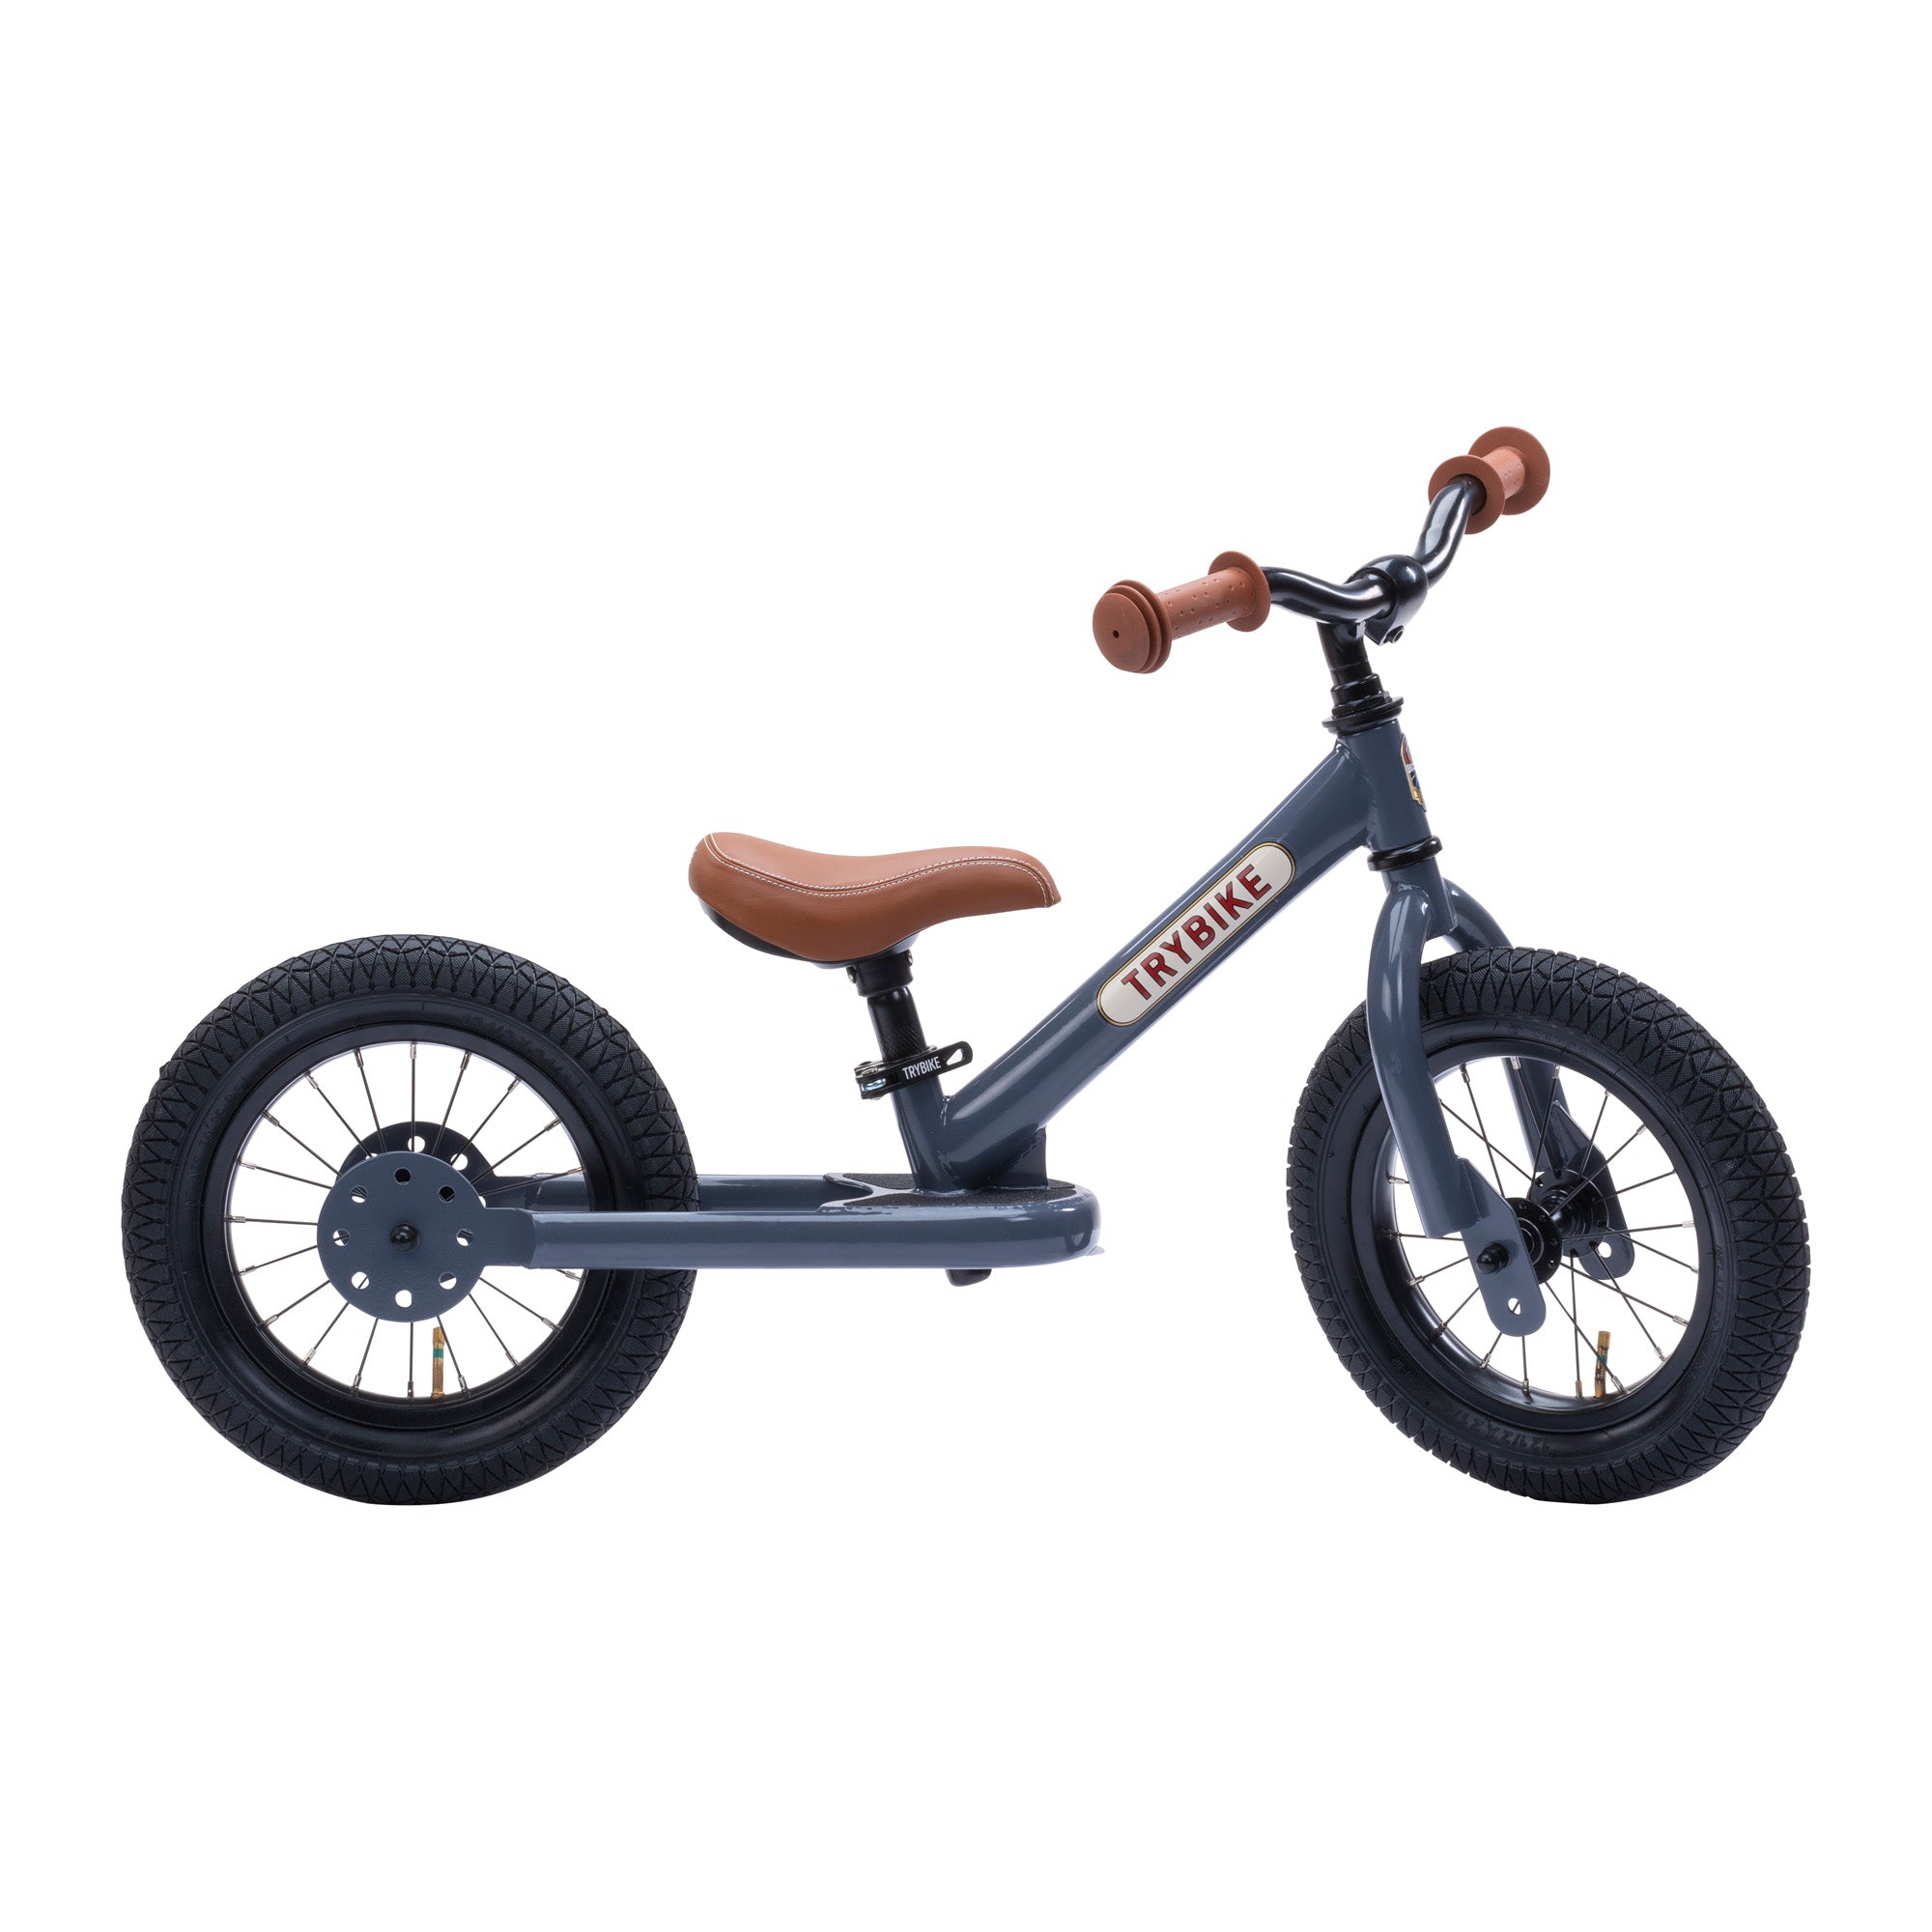 Draisienne ou tricycle : Quel jouet offrir à un enfant ? - Chou Du Volant